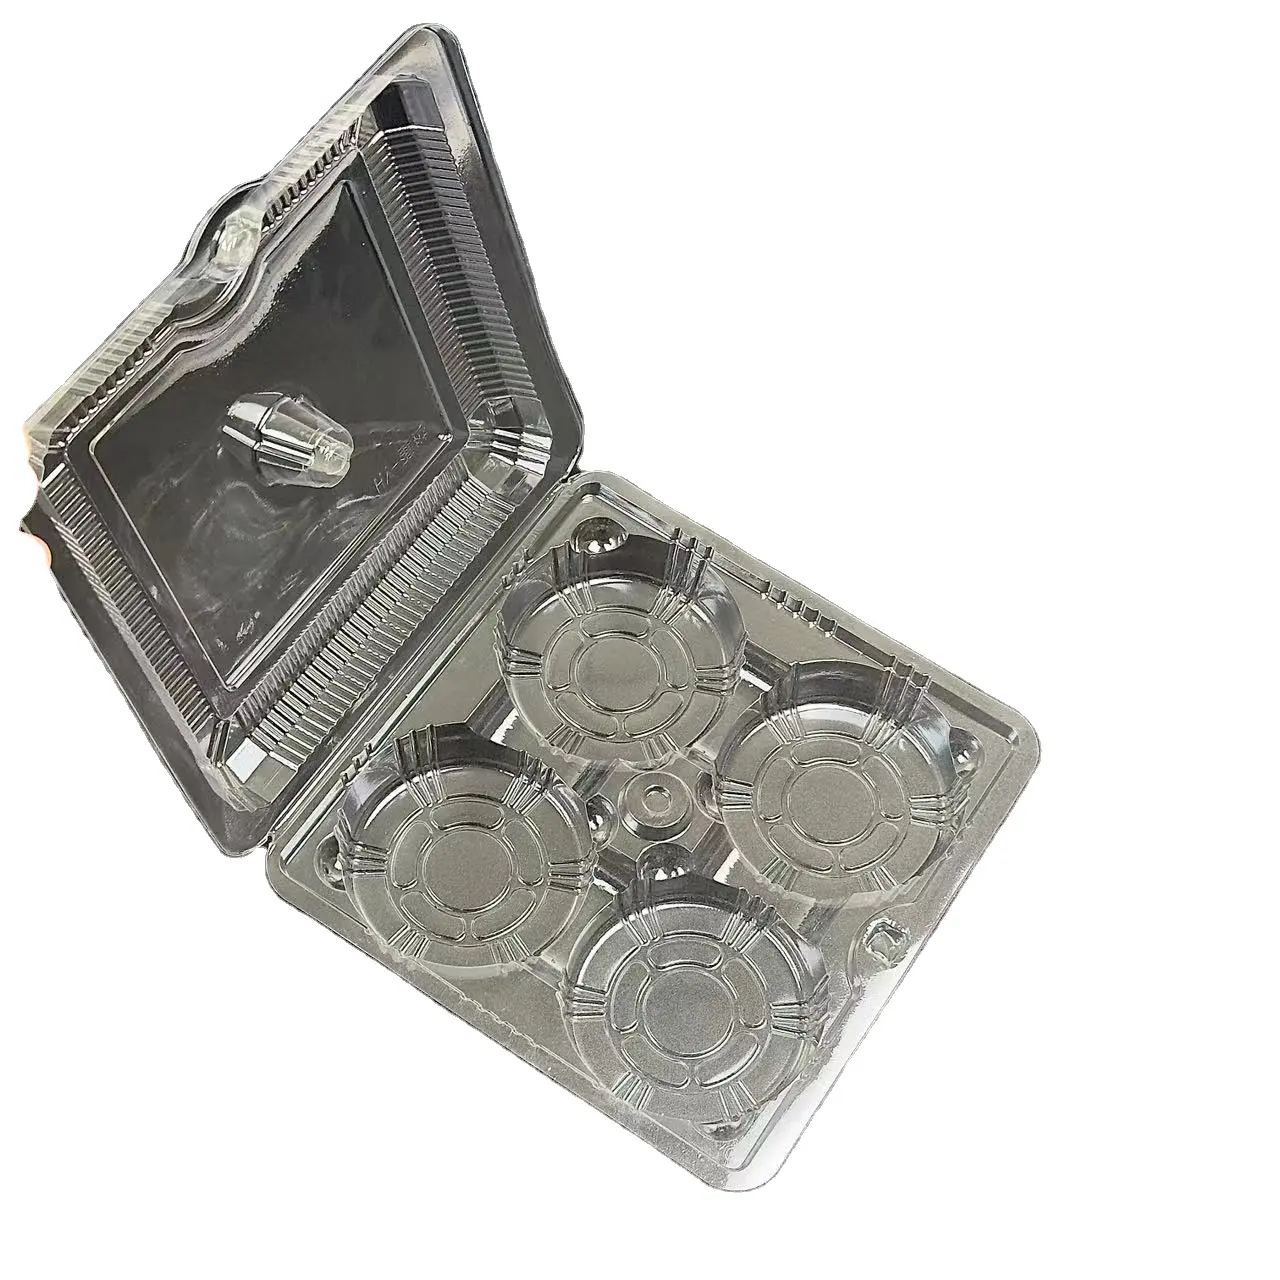 エッグタルトボックス透明プラスチックエッグタルト新しいデザインパッケージトレイケーキボックスプラスチックボックス